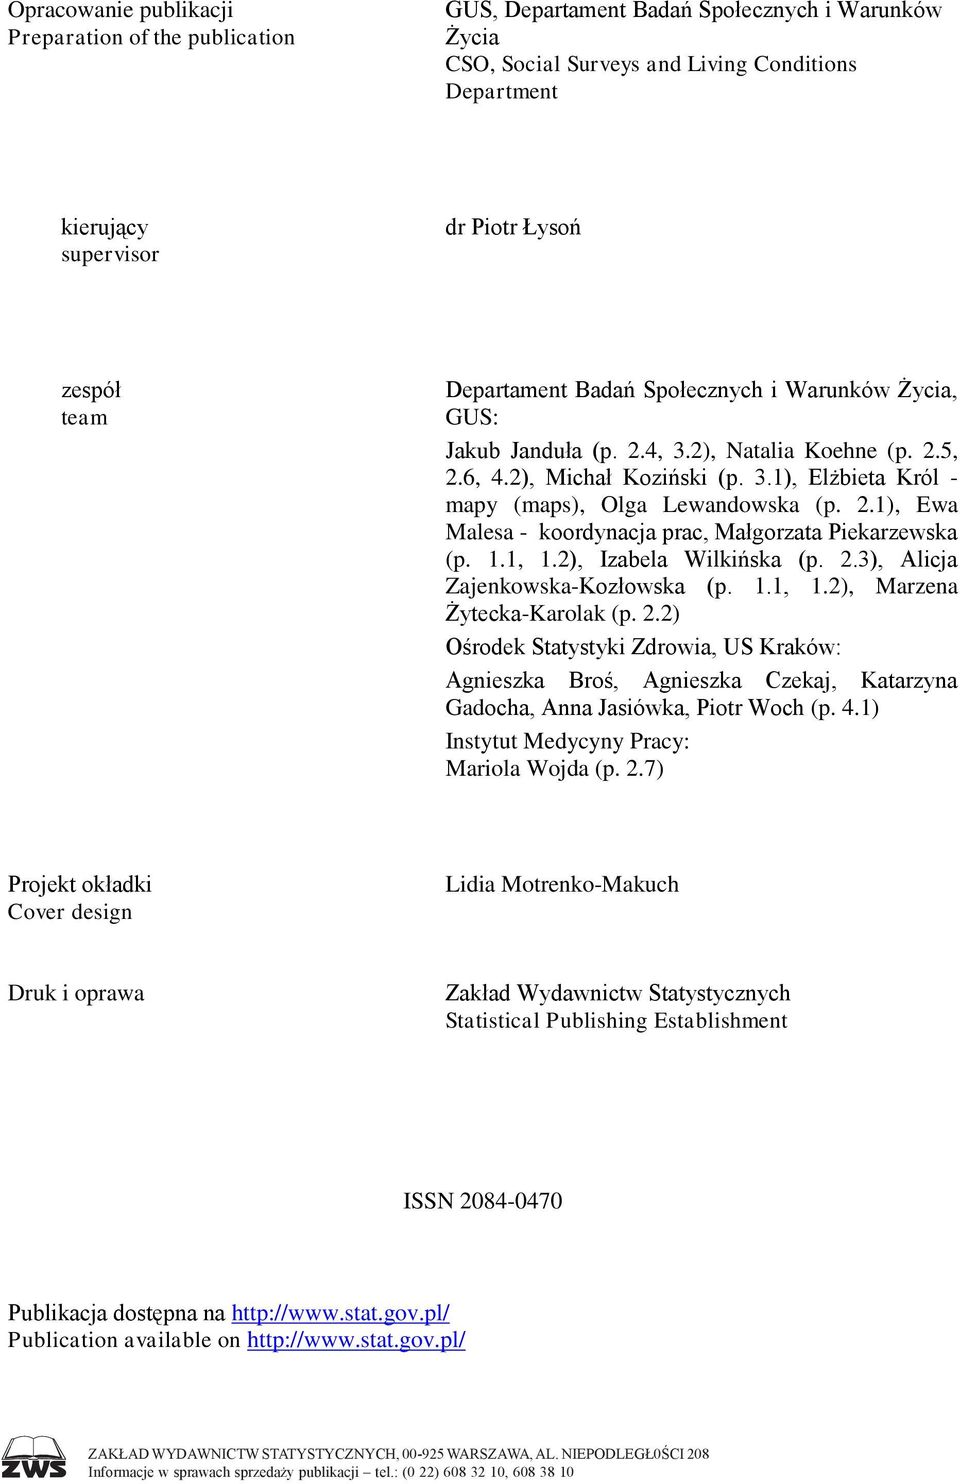 2.1), Ewa Malesa - koordynacja prac, Małgorzata Piekarzewska (p. 1.1, 1.2), Izabela Wilkińska (p. 2.